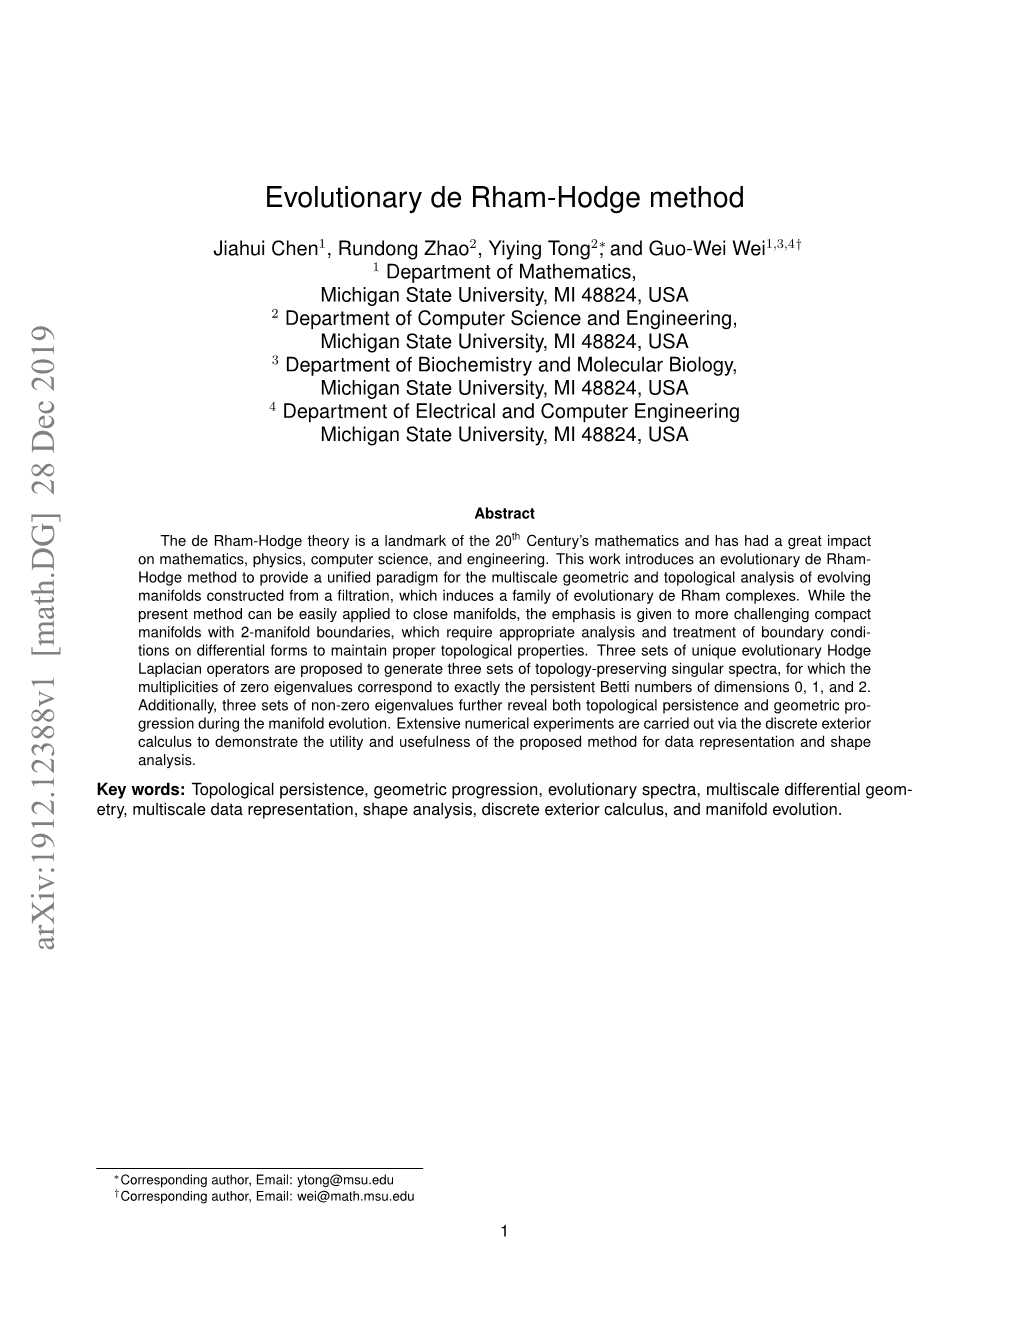 Evolutionary De Rham-Hodge Method